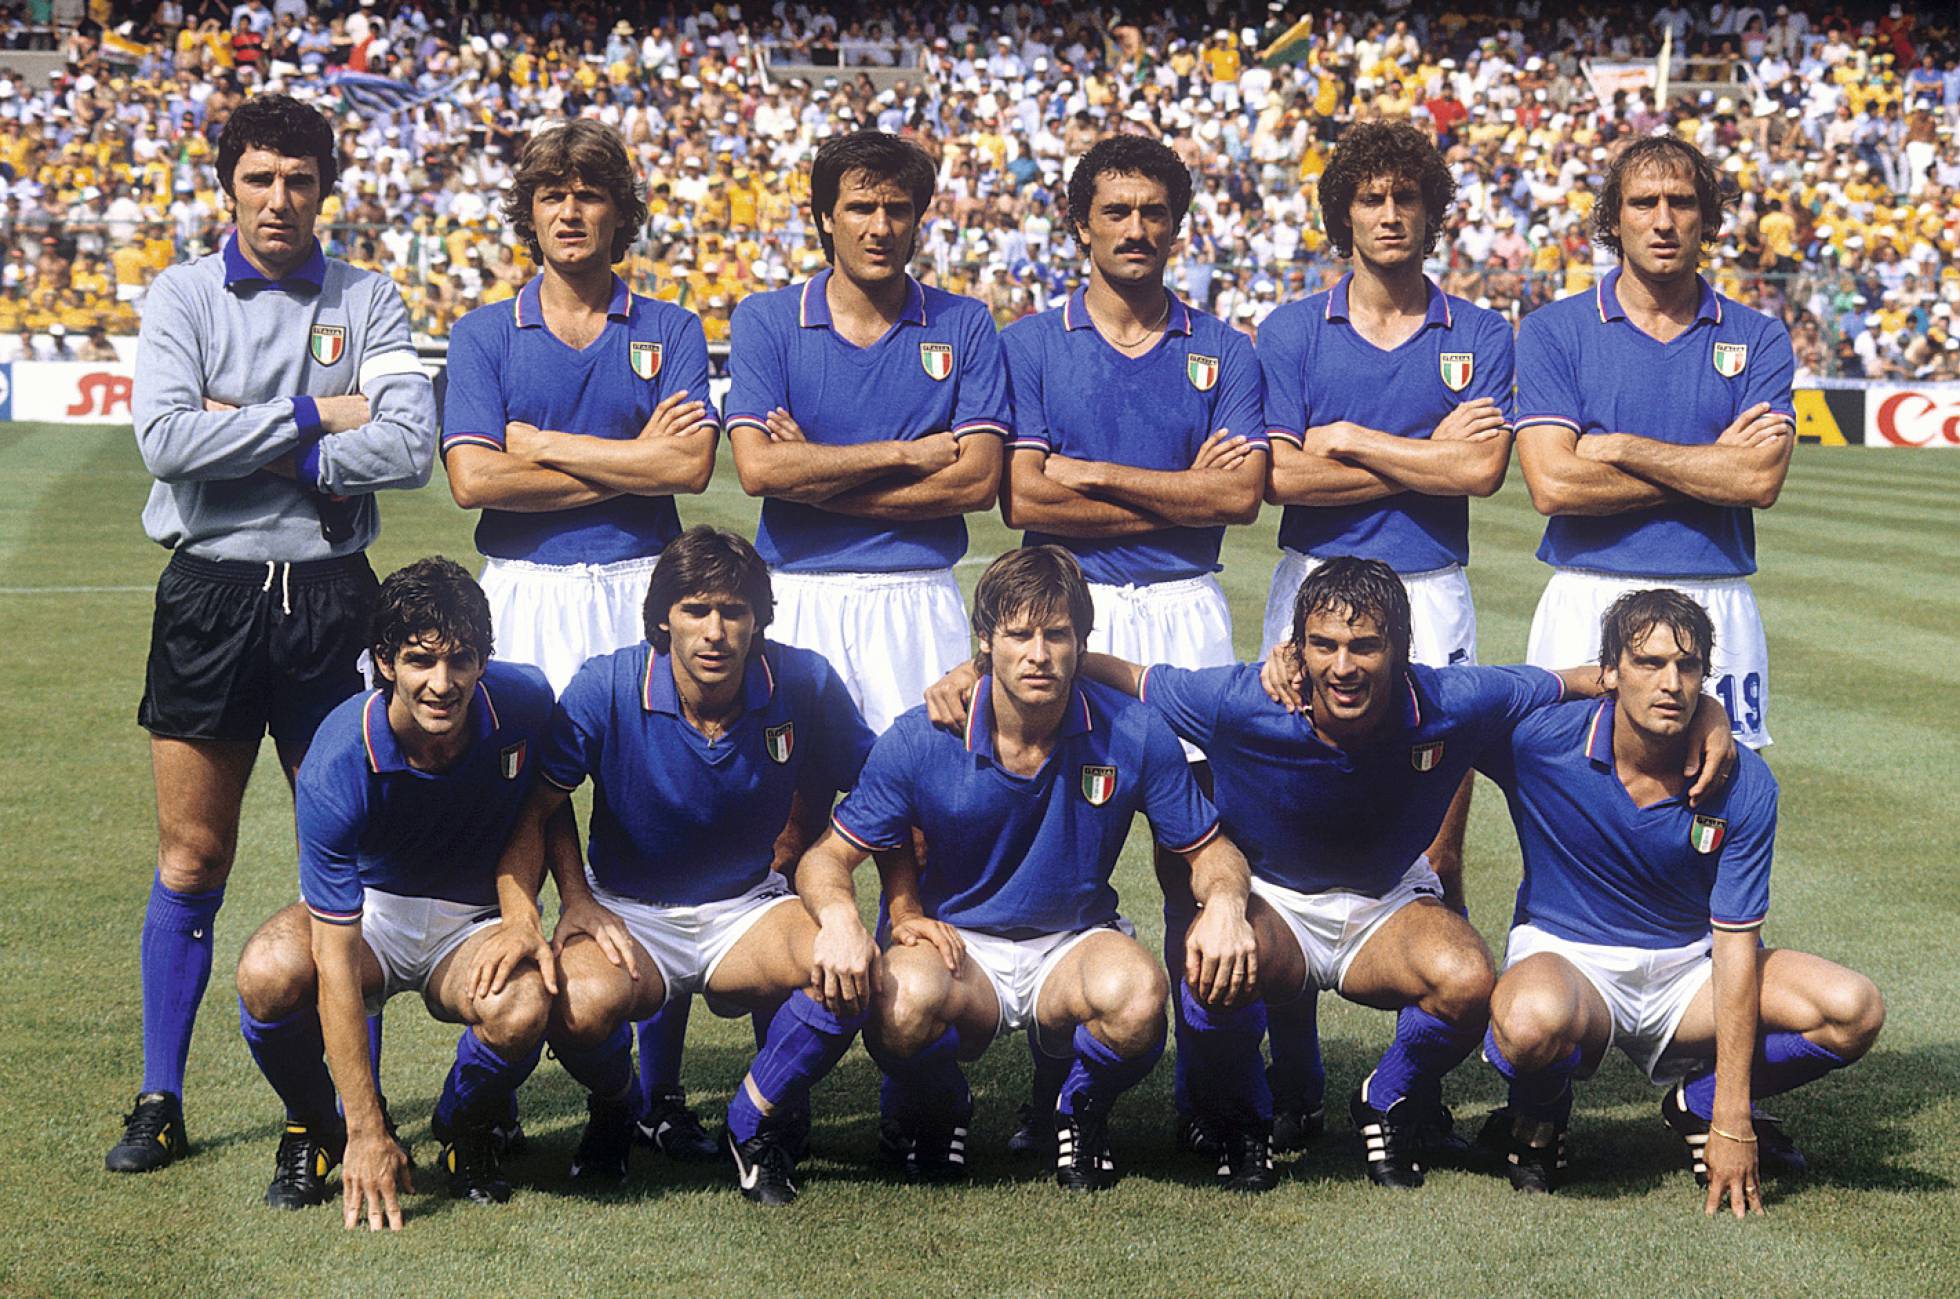 Todos quieren vestir la zamarra de Italia del Mundial '82 ...